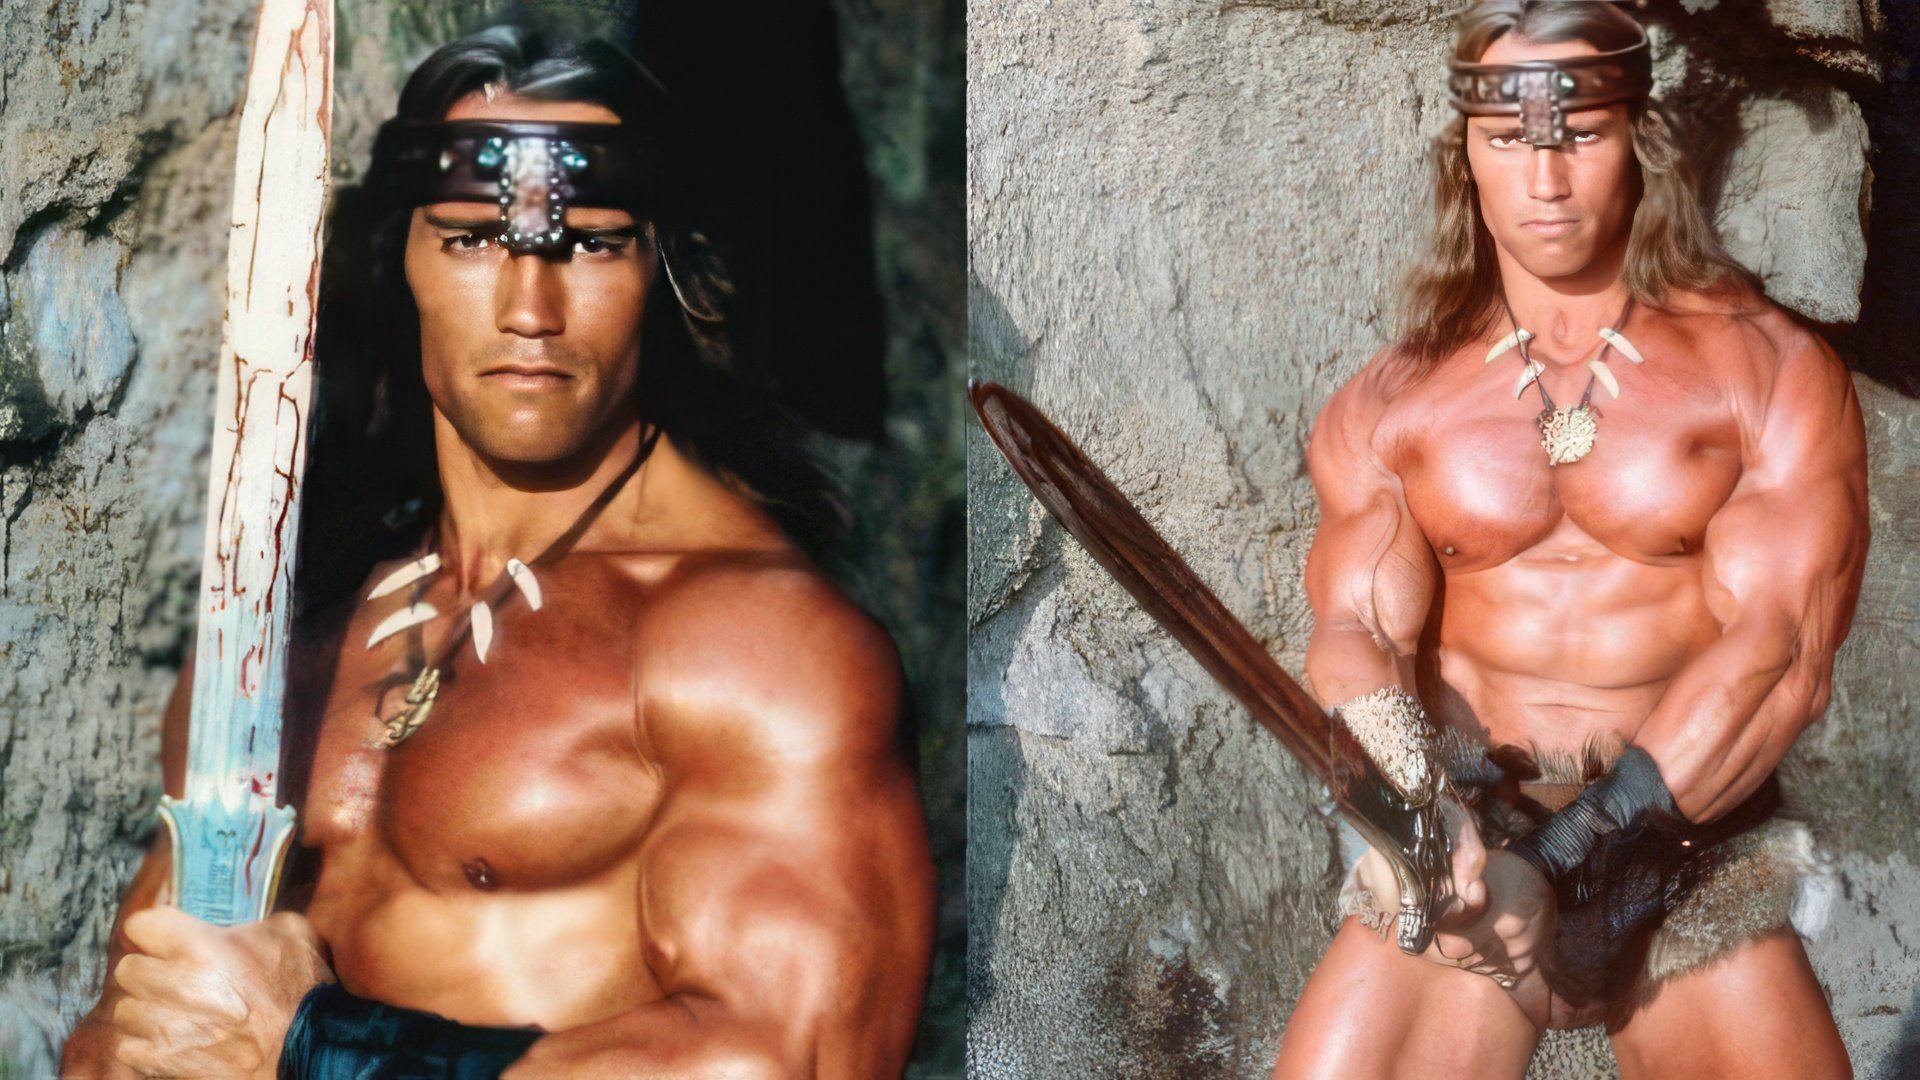 Arnold Schwarzenegger as Conan the Barbarian